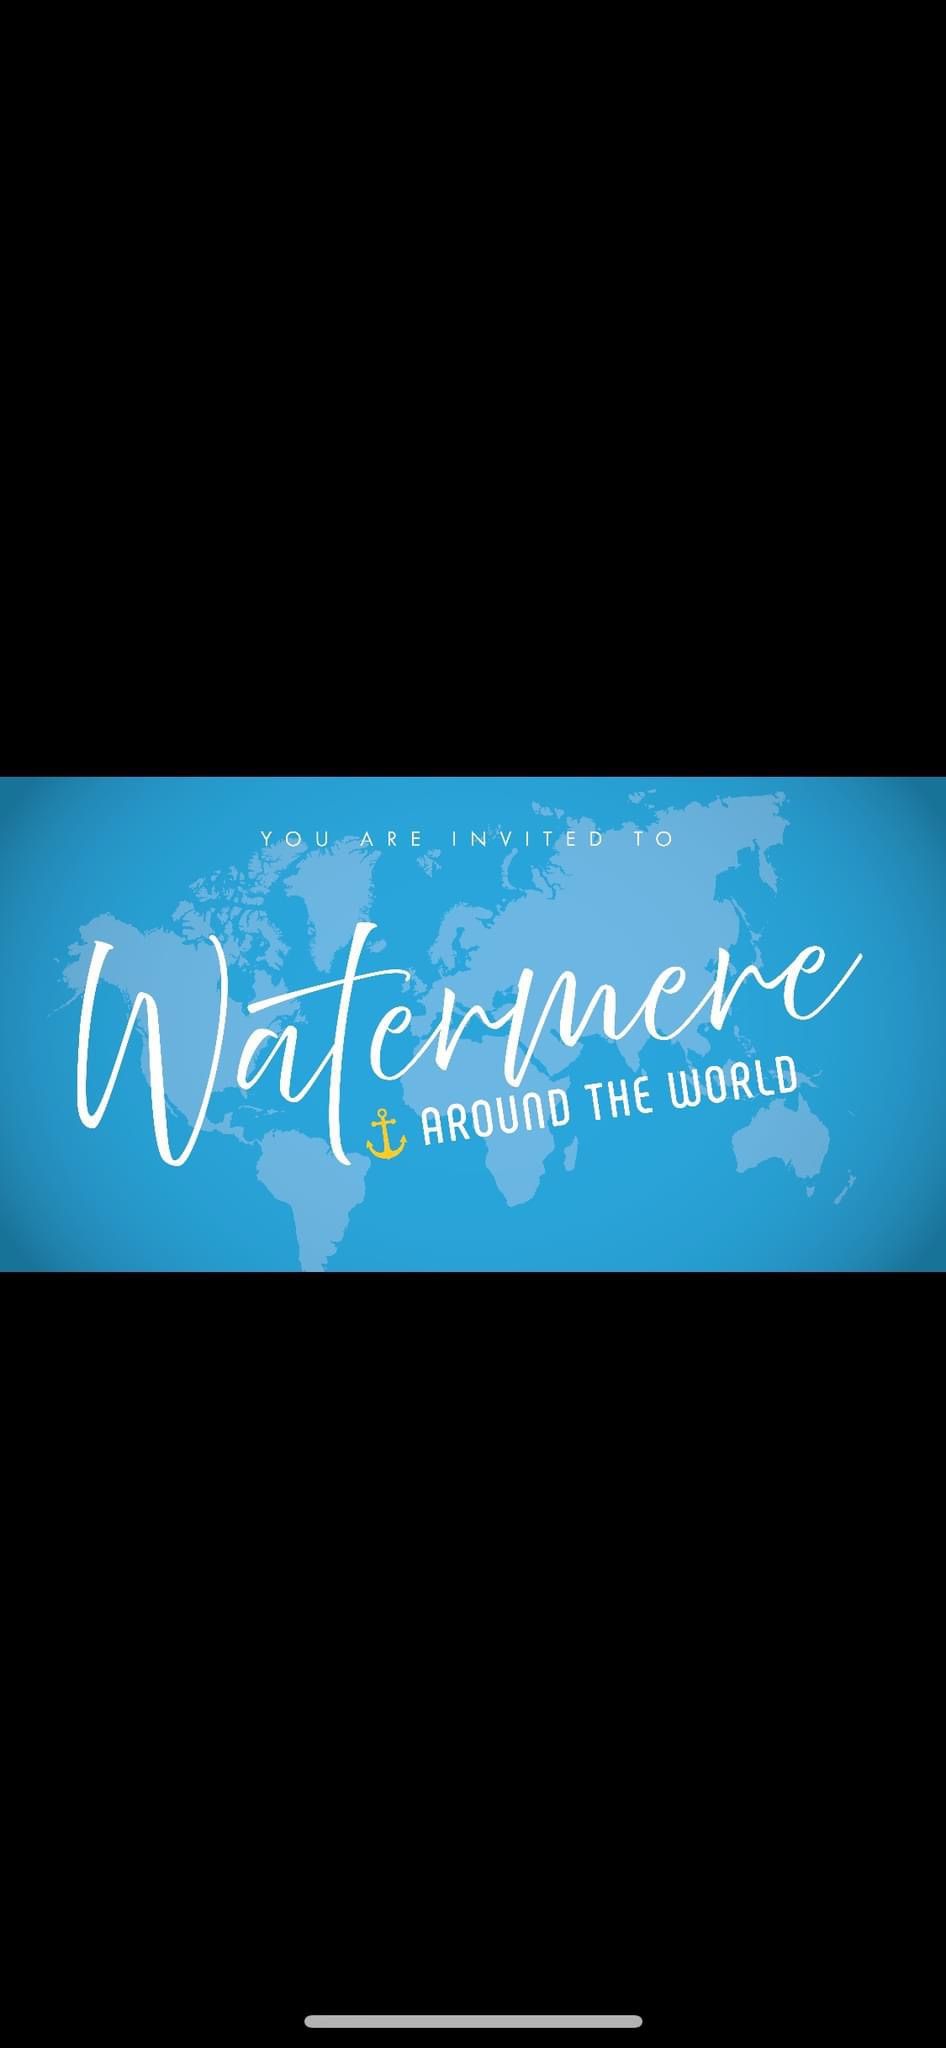 Watermere Around the World